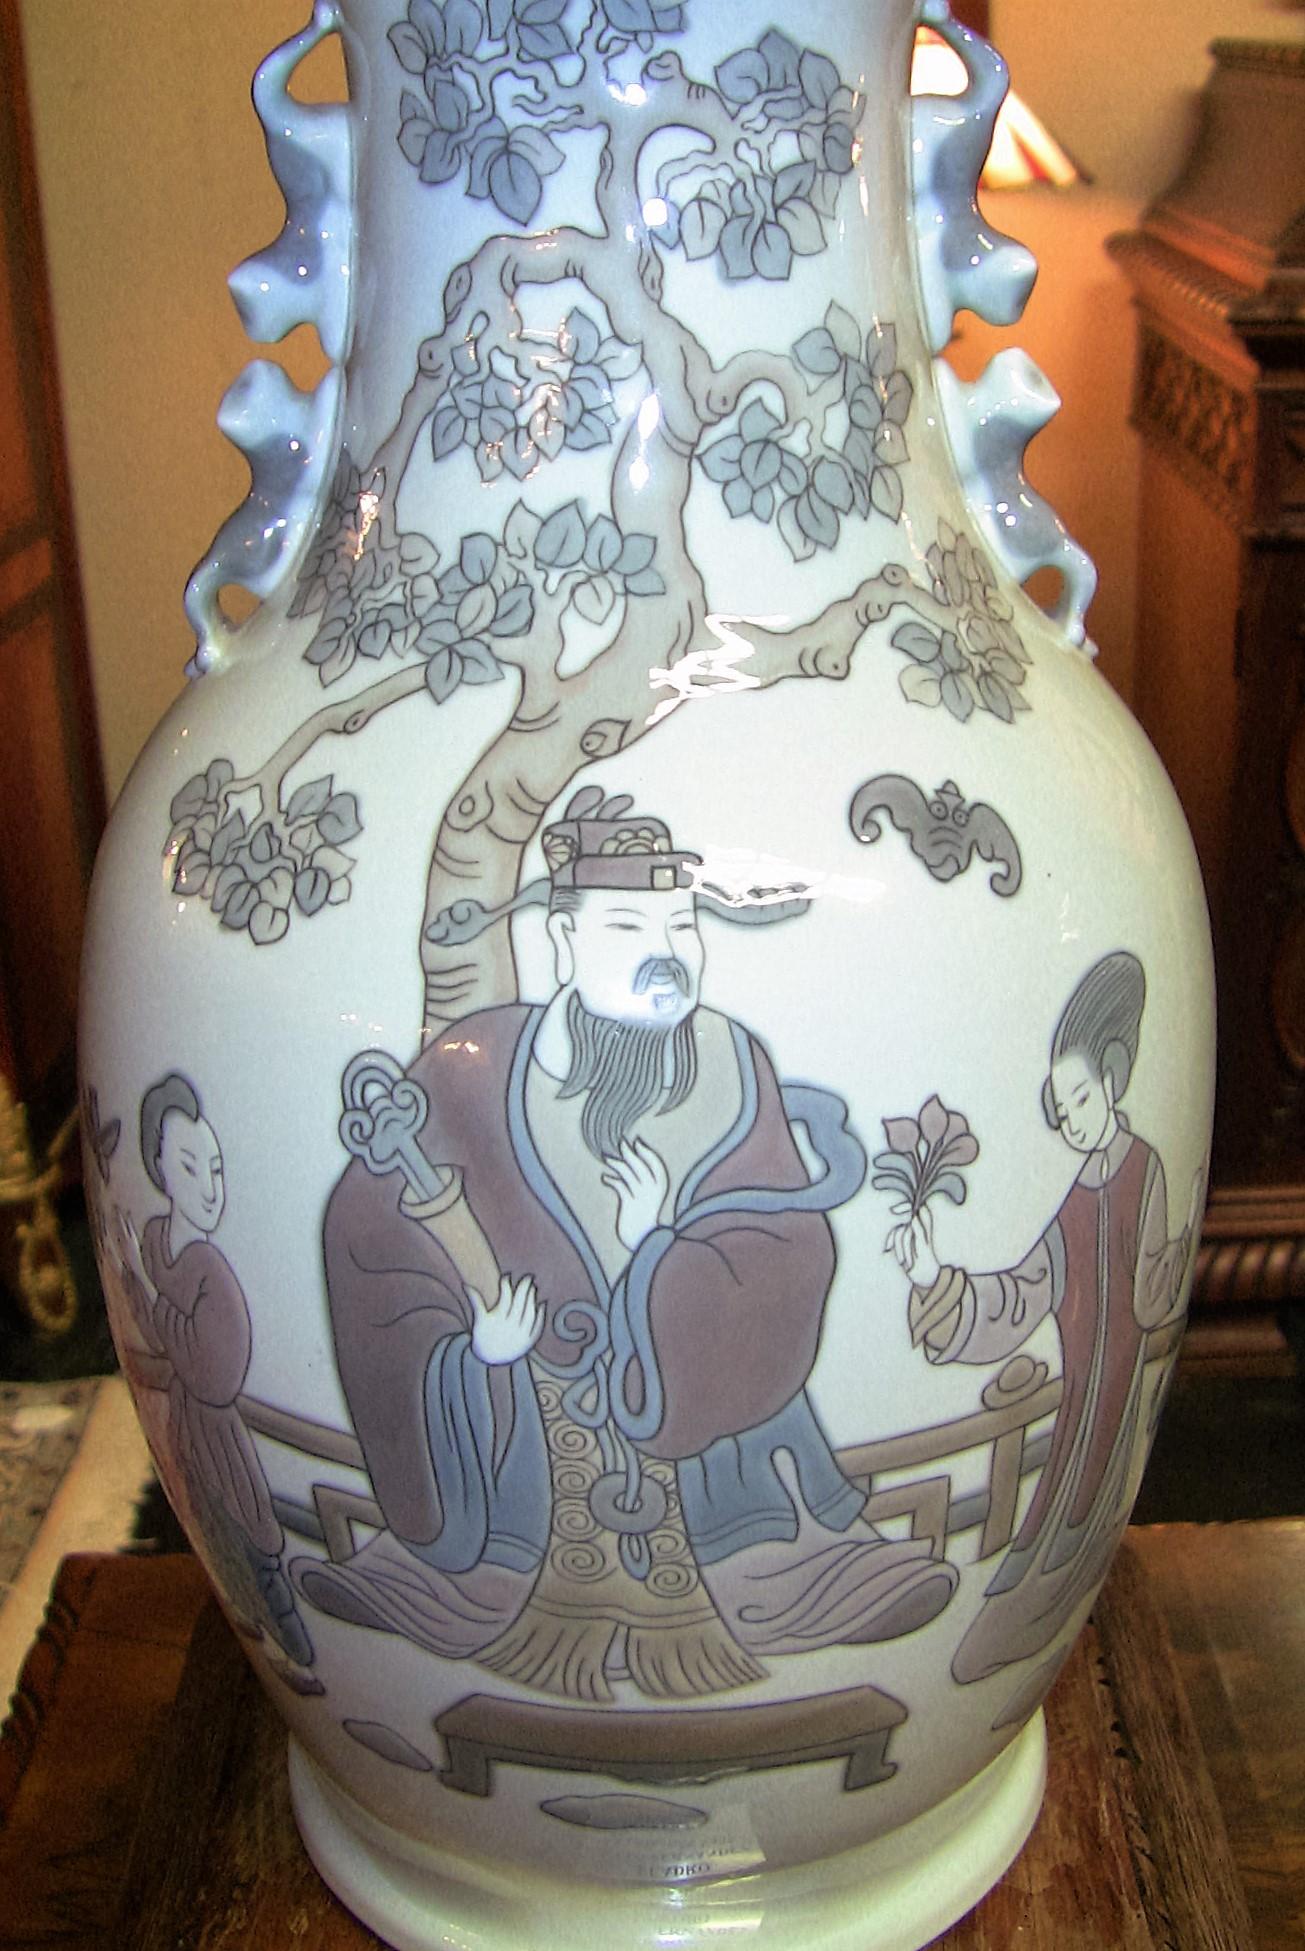 PRÄSENTIERT ein FANTASTISCH RARES Paar Lladro Porzellan 'Mandarin Vasen'.

Hergestellt um 1973 und in Spanien von dem außergewöhnlichen Hersteller Lladro gefertigt.

Diese beiden Vasen wurden einzeln hergestellt und verkauft und trugen den Titel